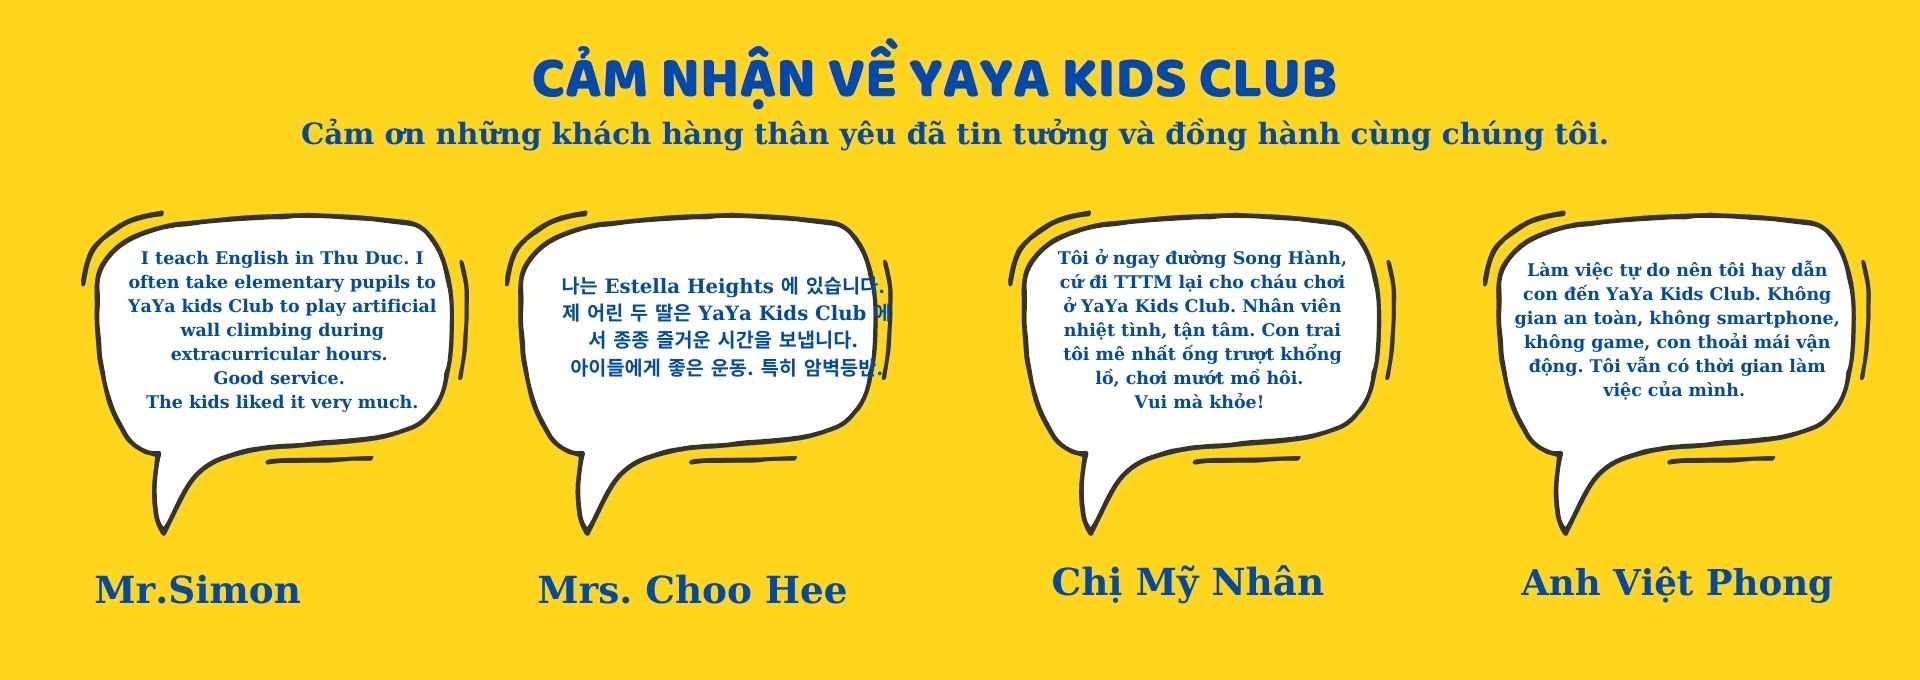 Yaya Kids Club nhận được đánh giá tin cậy từ khách hàng